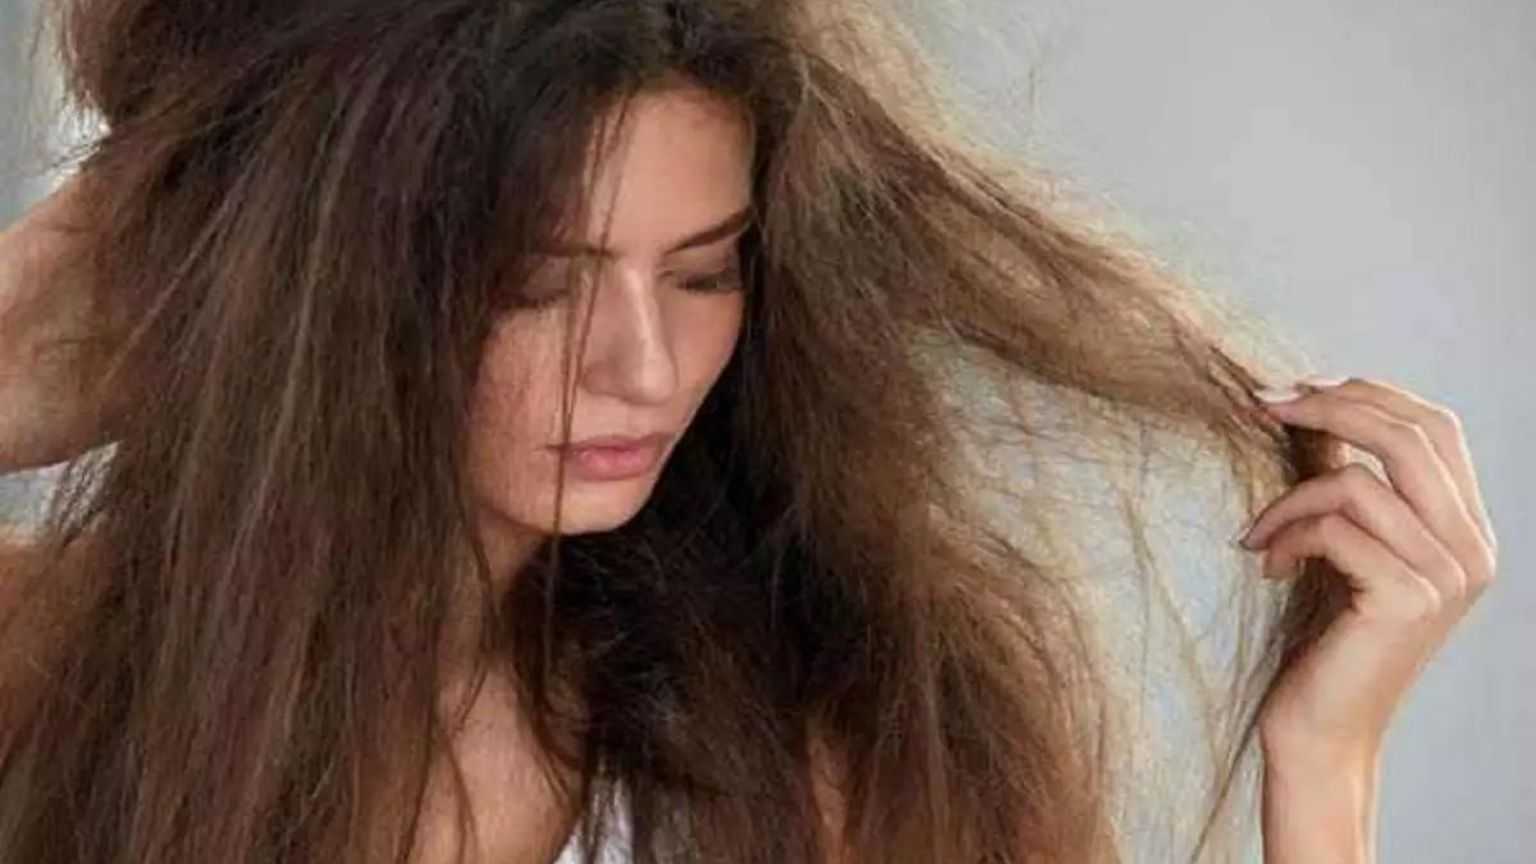 ہر روز بال دھونے کے ممکنہ مضر اثرات